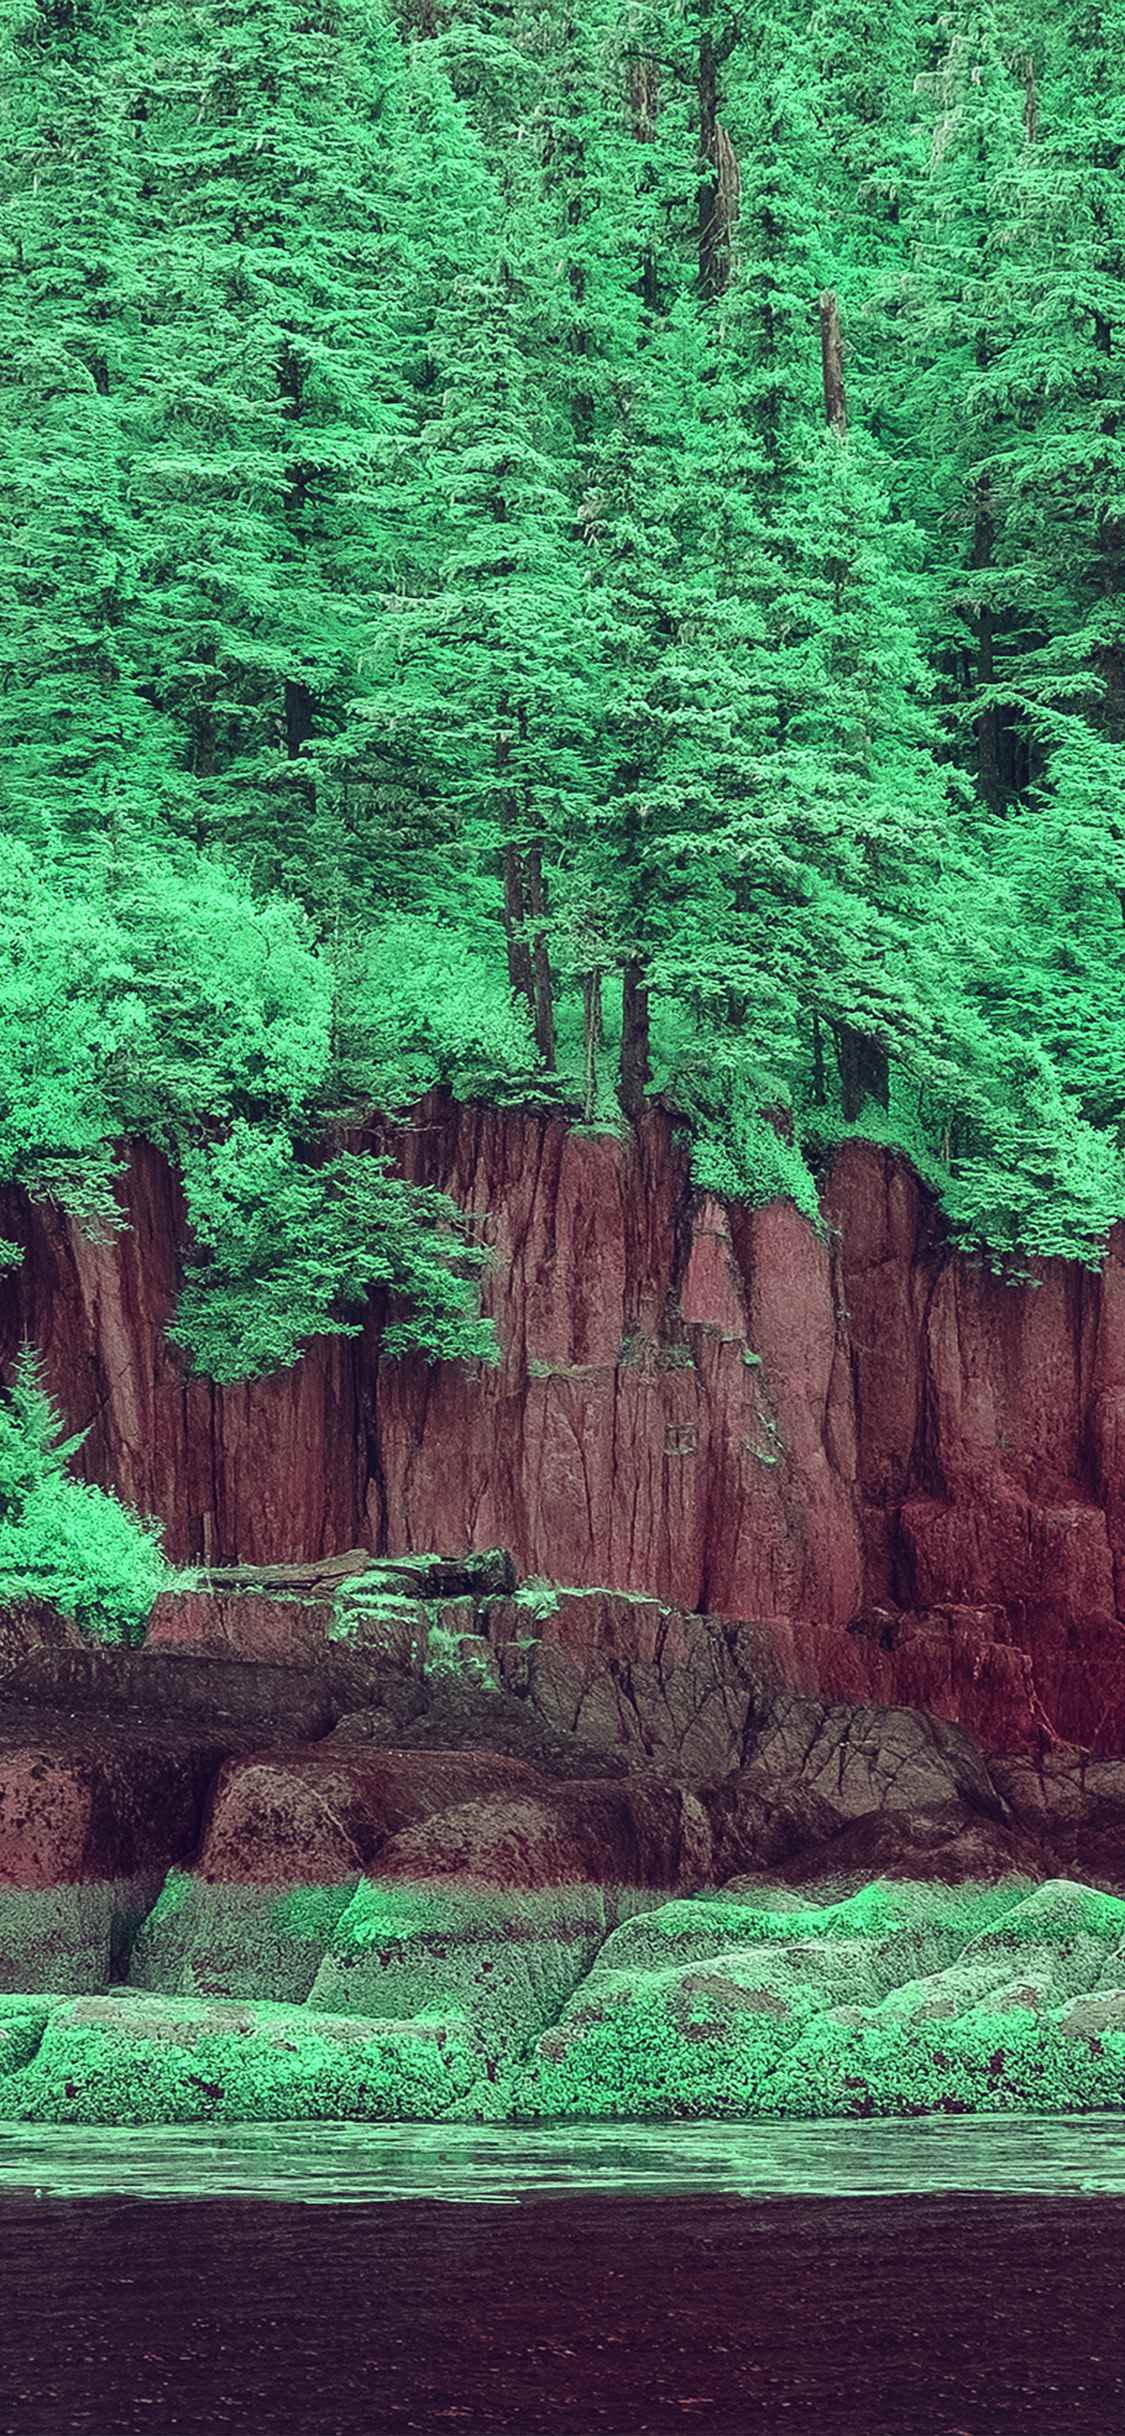 悬崖边绿油油的树林高清手机壁纸